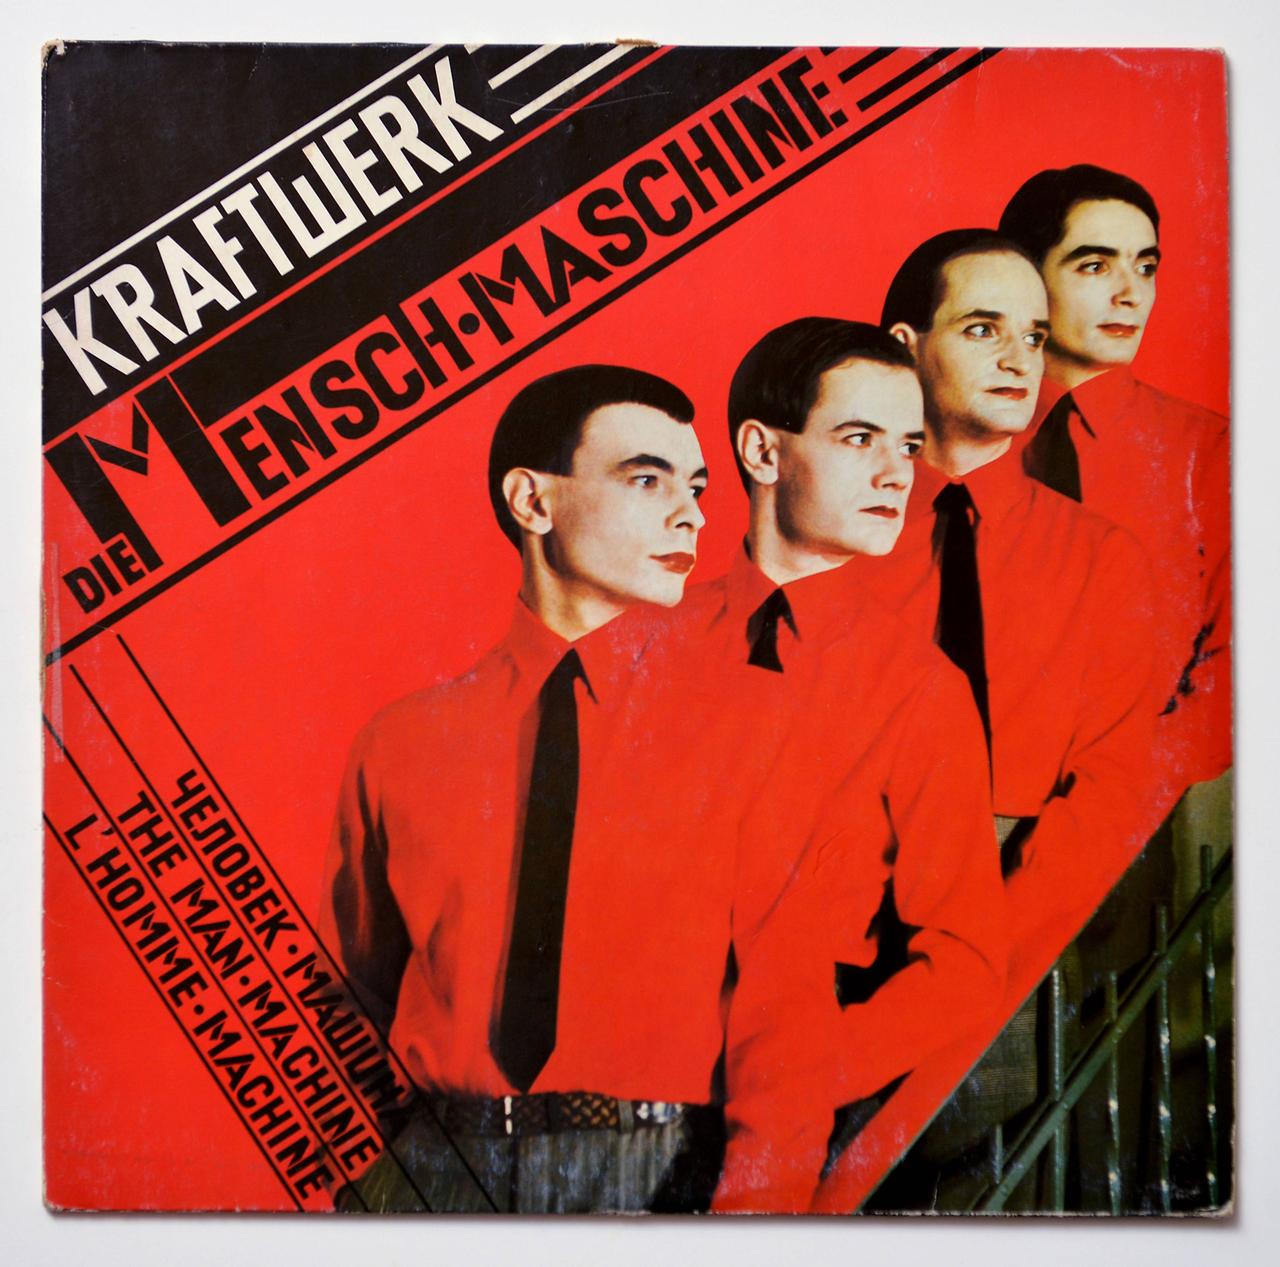 1978 erschien das Kraftwerk-Album "Die Mensch-Maschine" 